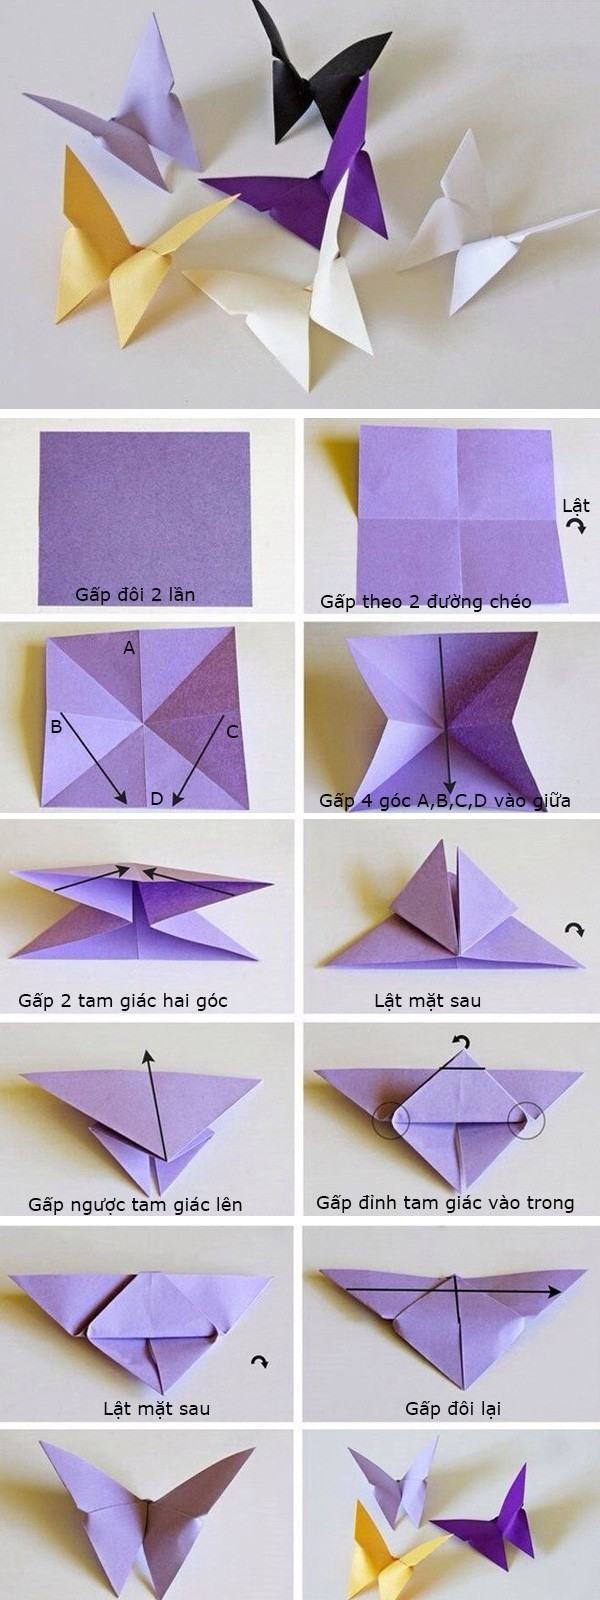 cách gấp giấy origami 5